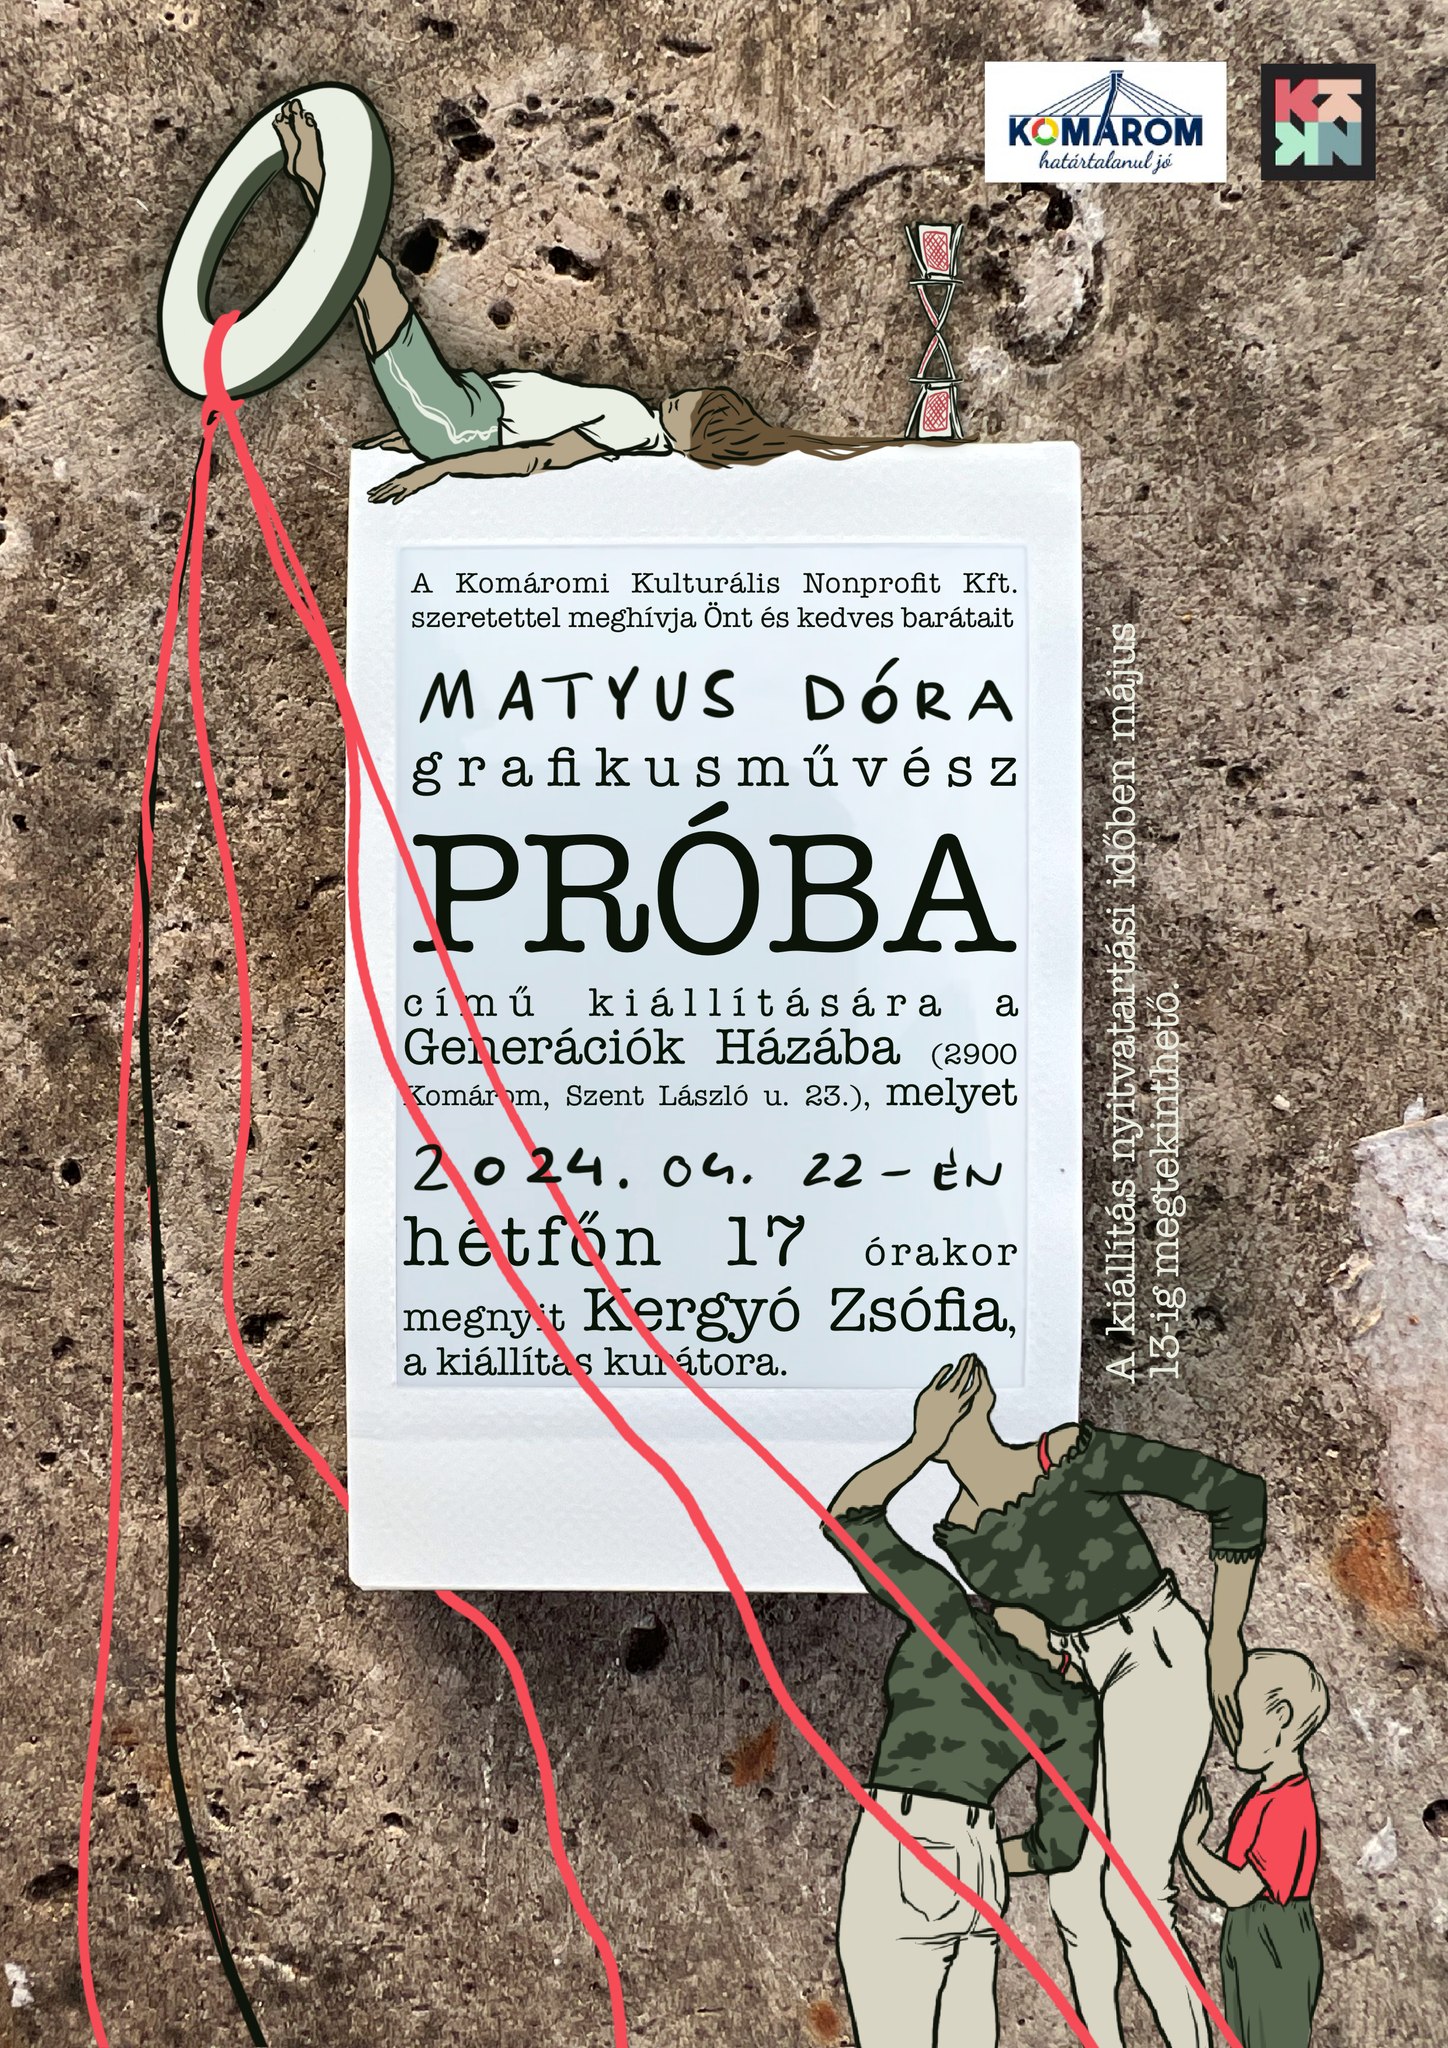 Matyus Dóra grafikusművész kiállítása 04.22.